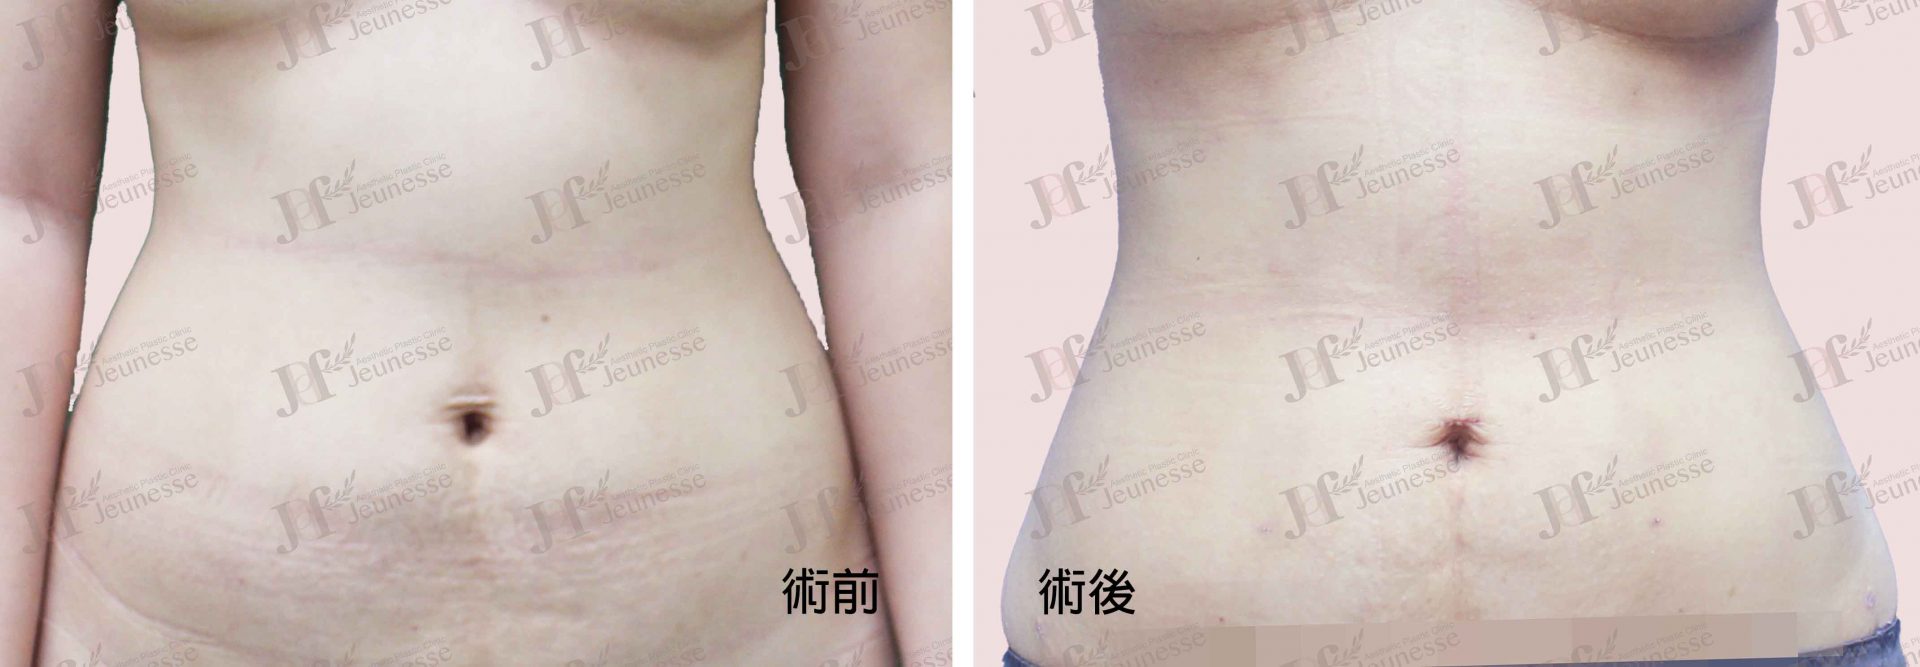 Liposuction- Abdomen case2 正面-浮水印